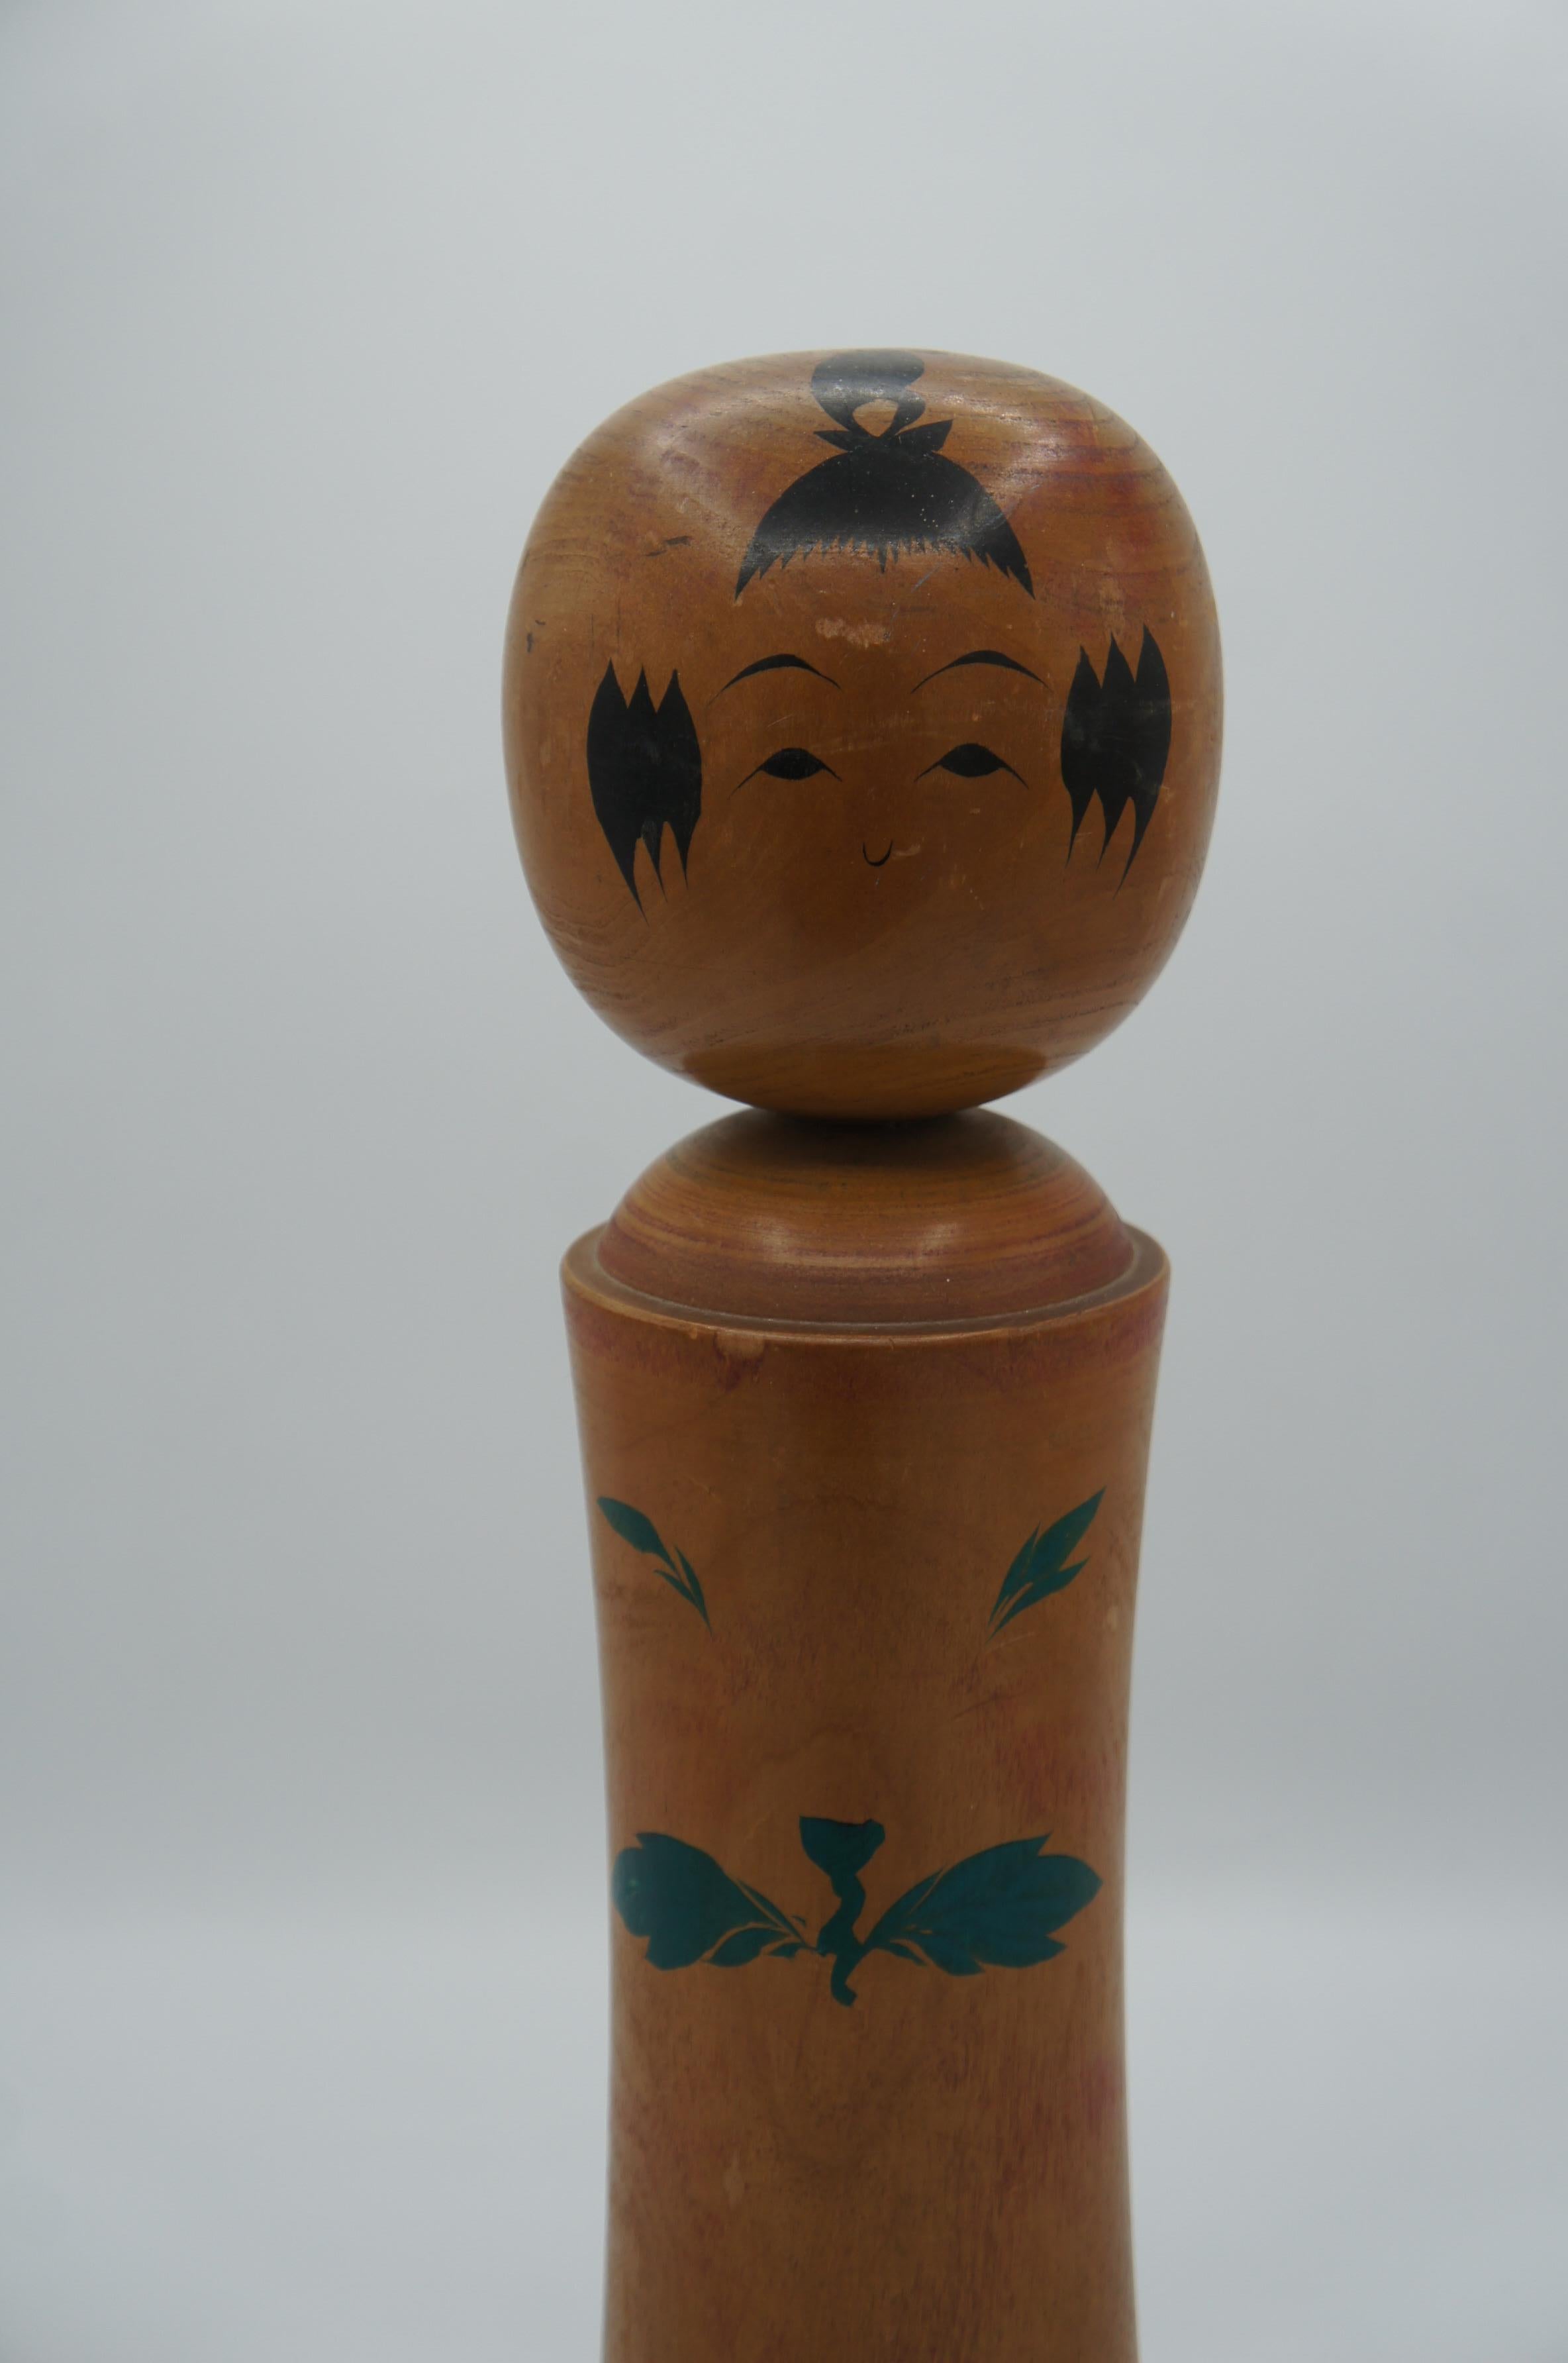 Dies ist eine Holzpuppe, die in Japan um 1950 in der Showa-Ära hergestellt wurde. 
Diese Art von Puppen werden auf Japanisch Kokeshi genannt.
Der Stil dieses Kokeshi ist Naruko aus der Präfektur Miyagi.
Dieses Kokeshi wurde von einem